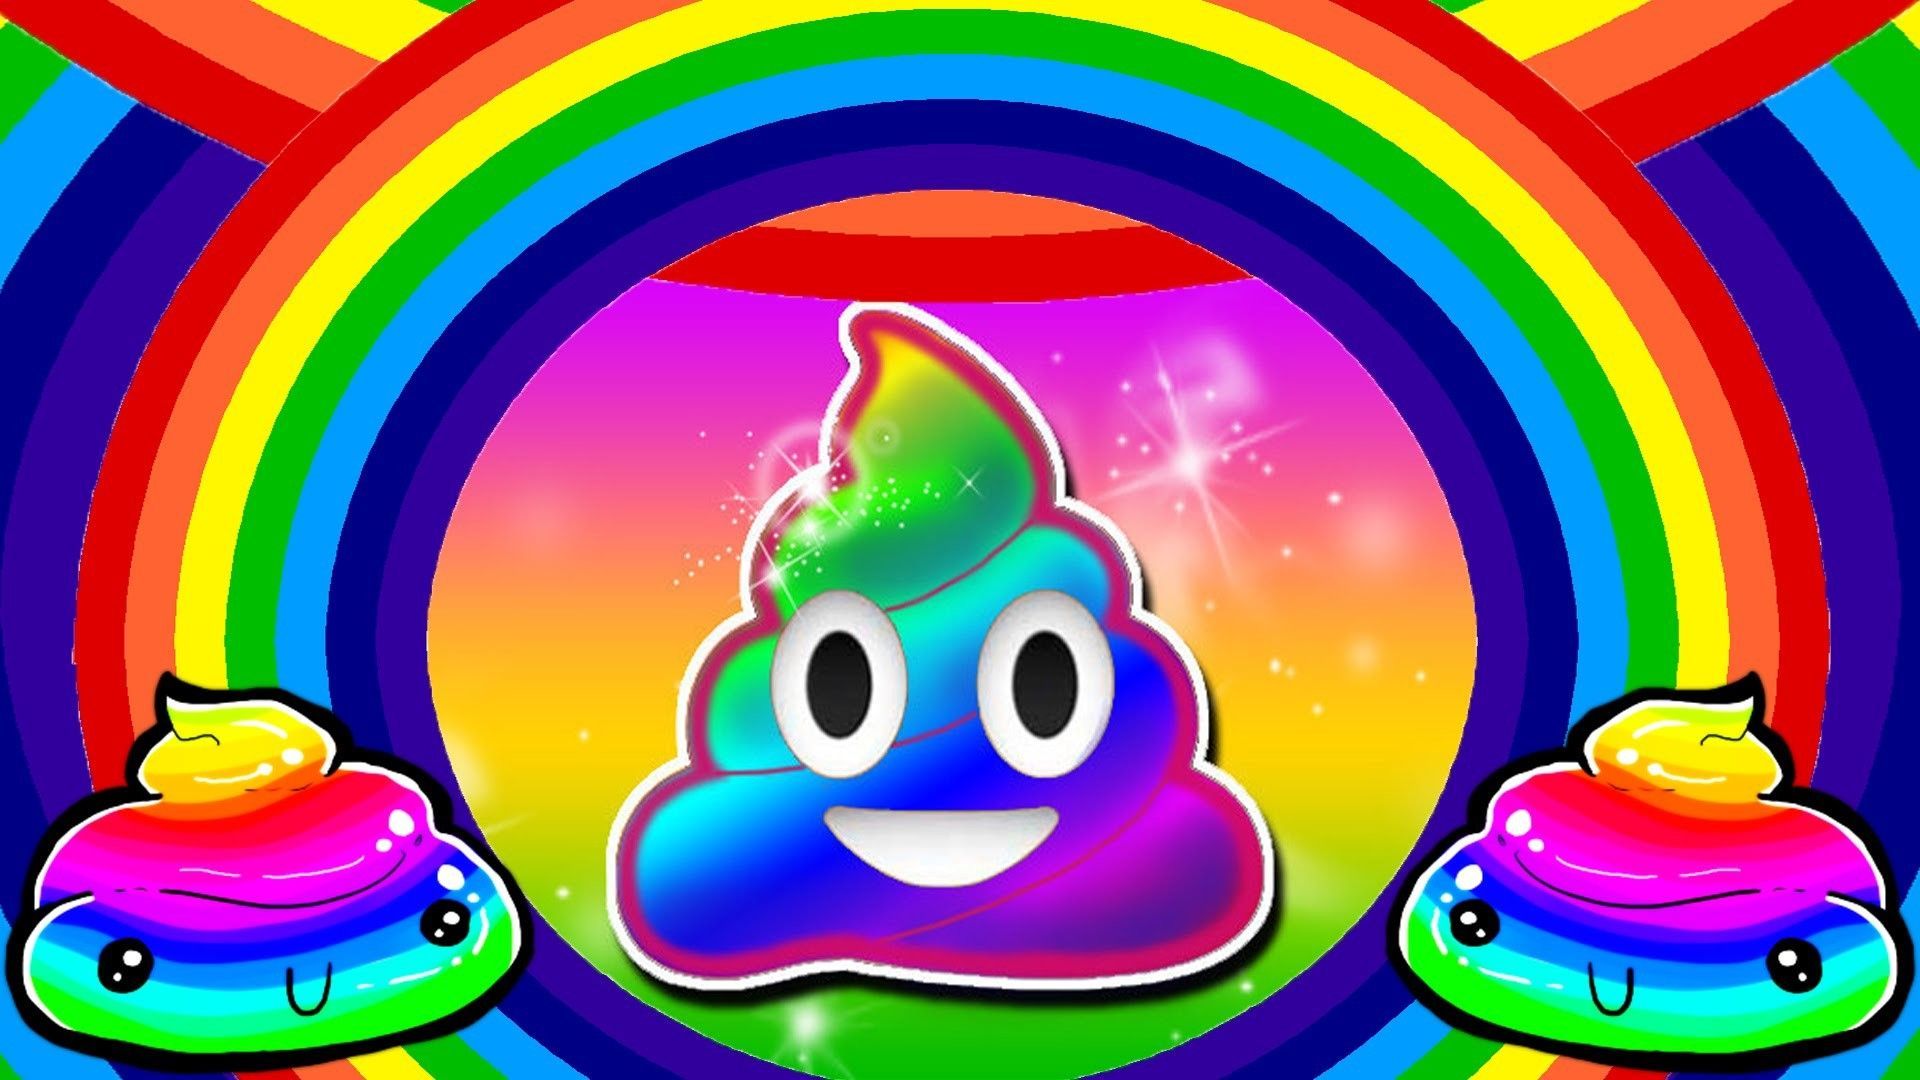 Poop Emoji Wallpaper Free Poop .wallpaperaccess.com